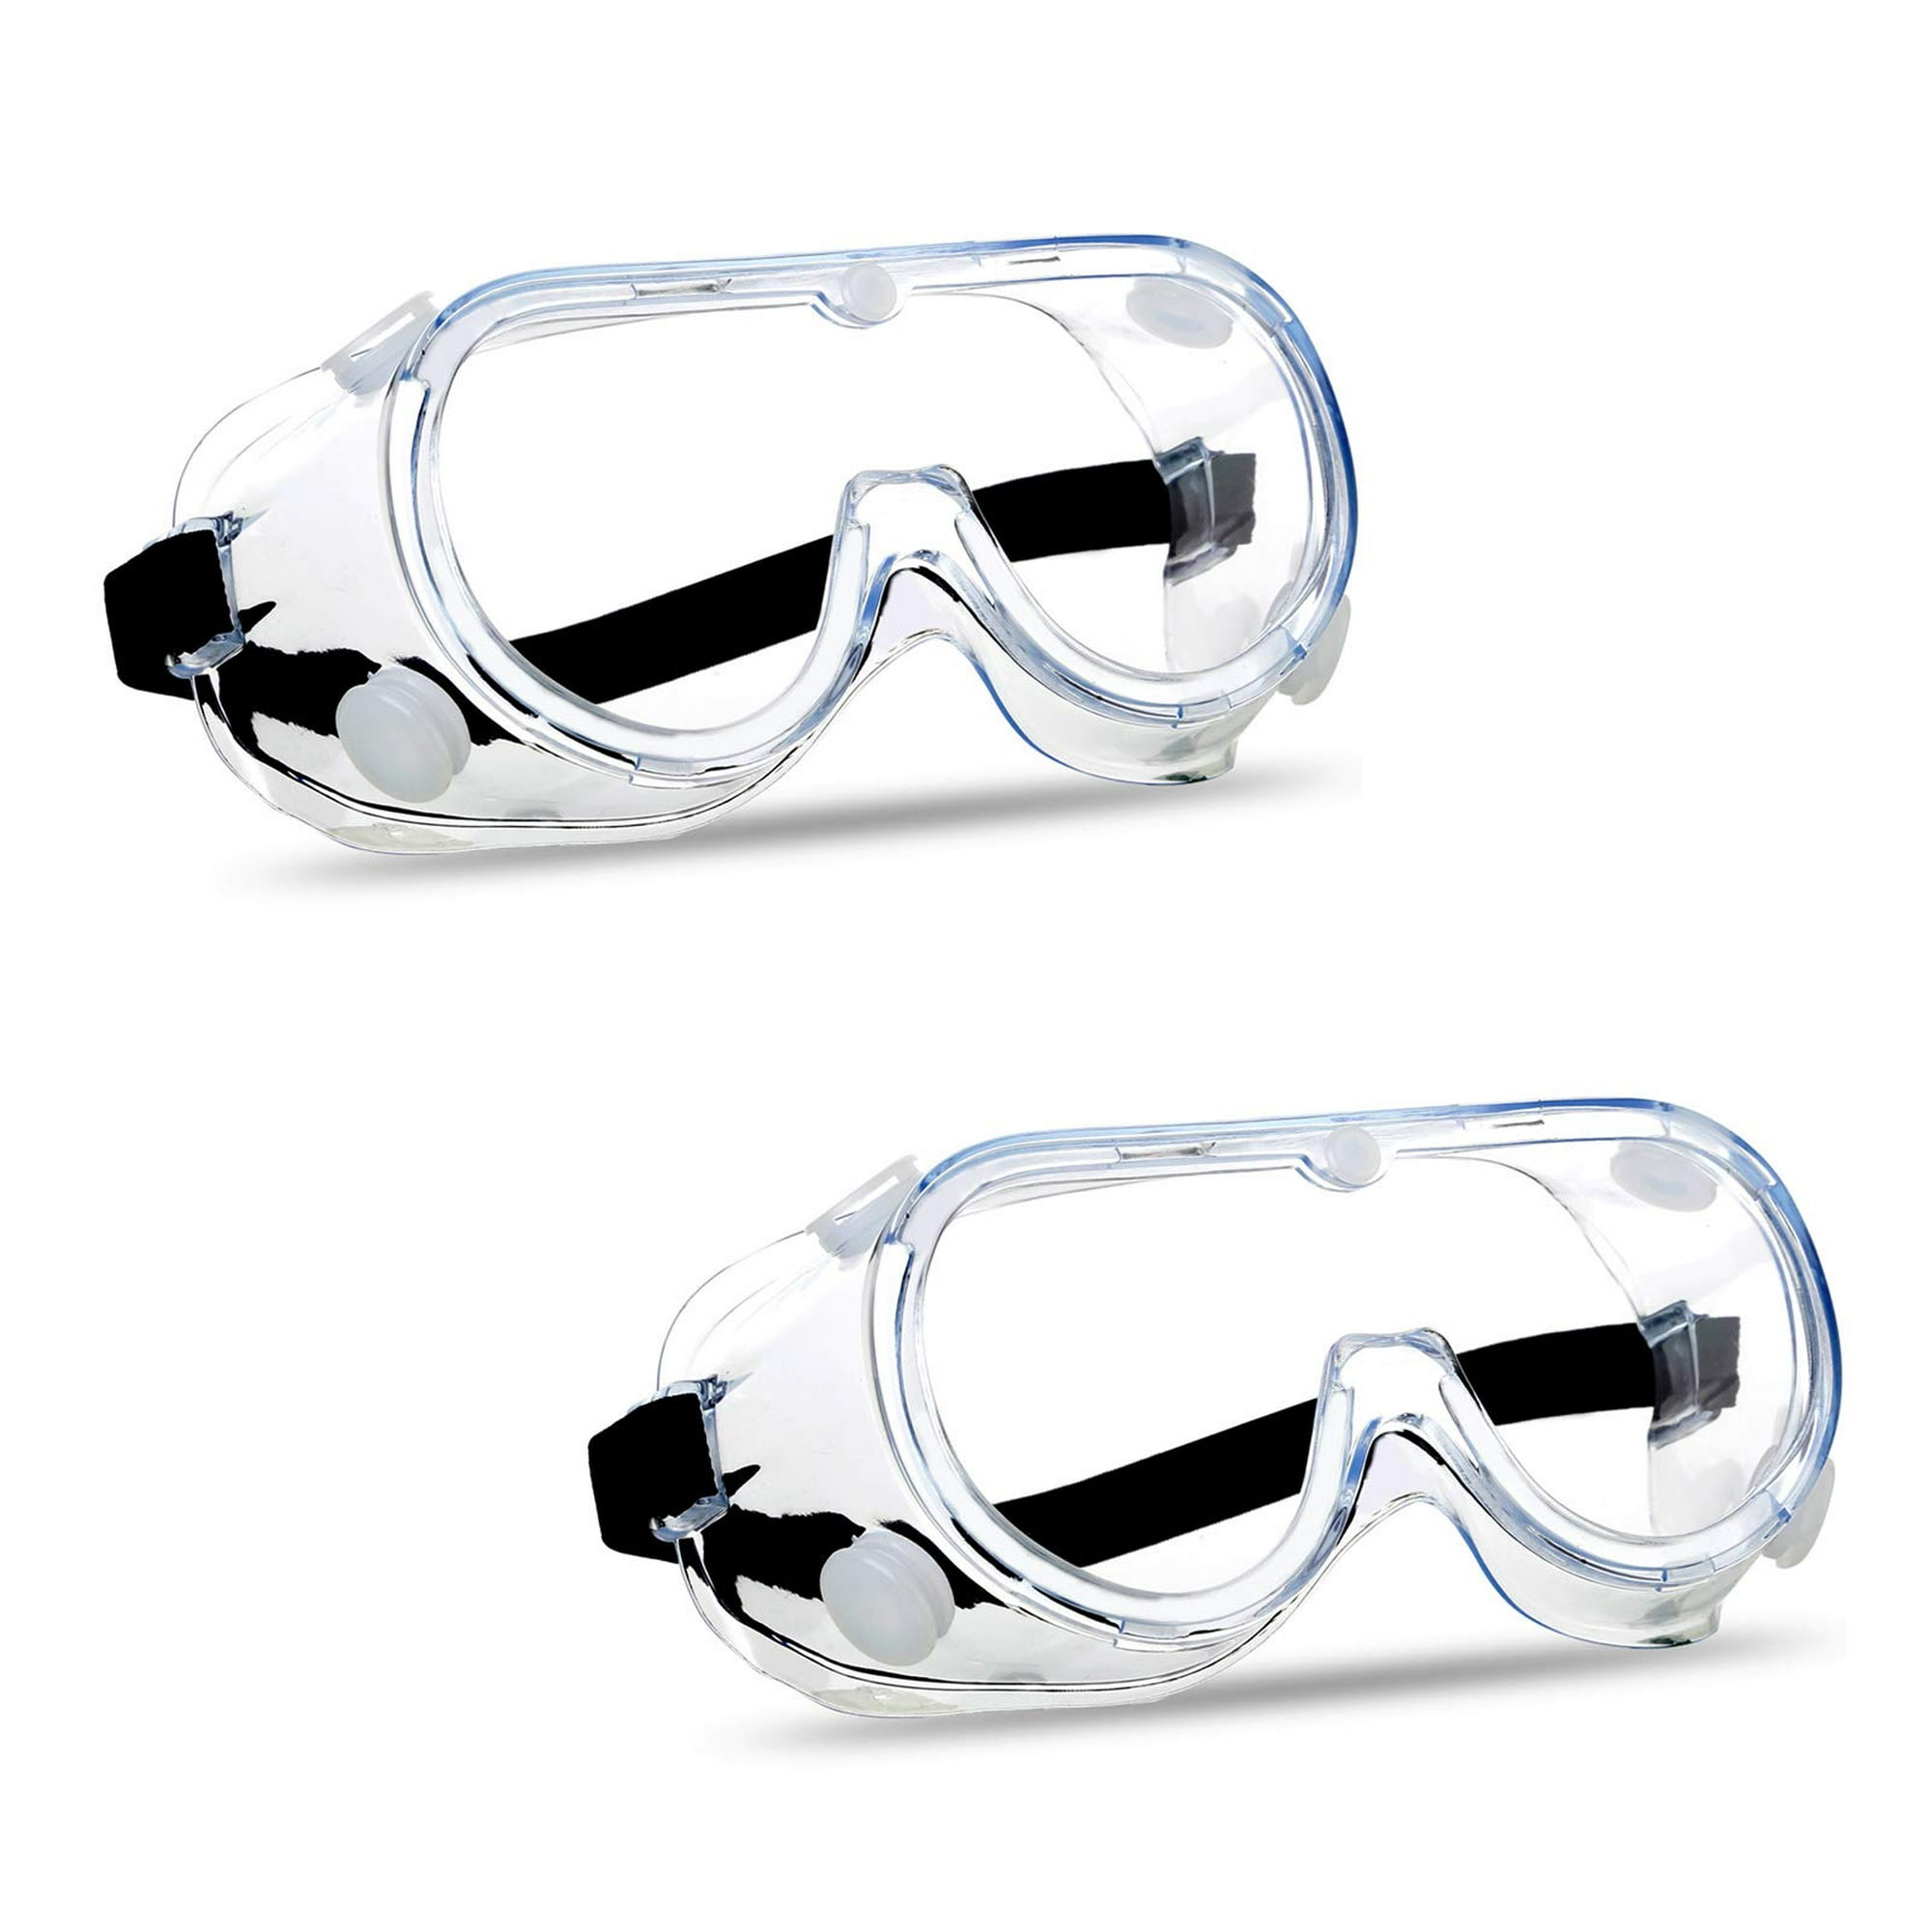 Gafas de seguridad, transparentes antivaho y antiarañazos, reducen